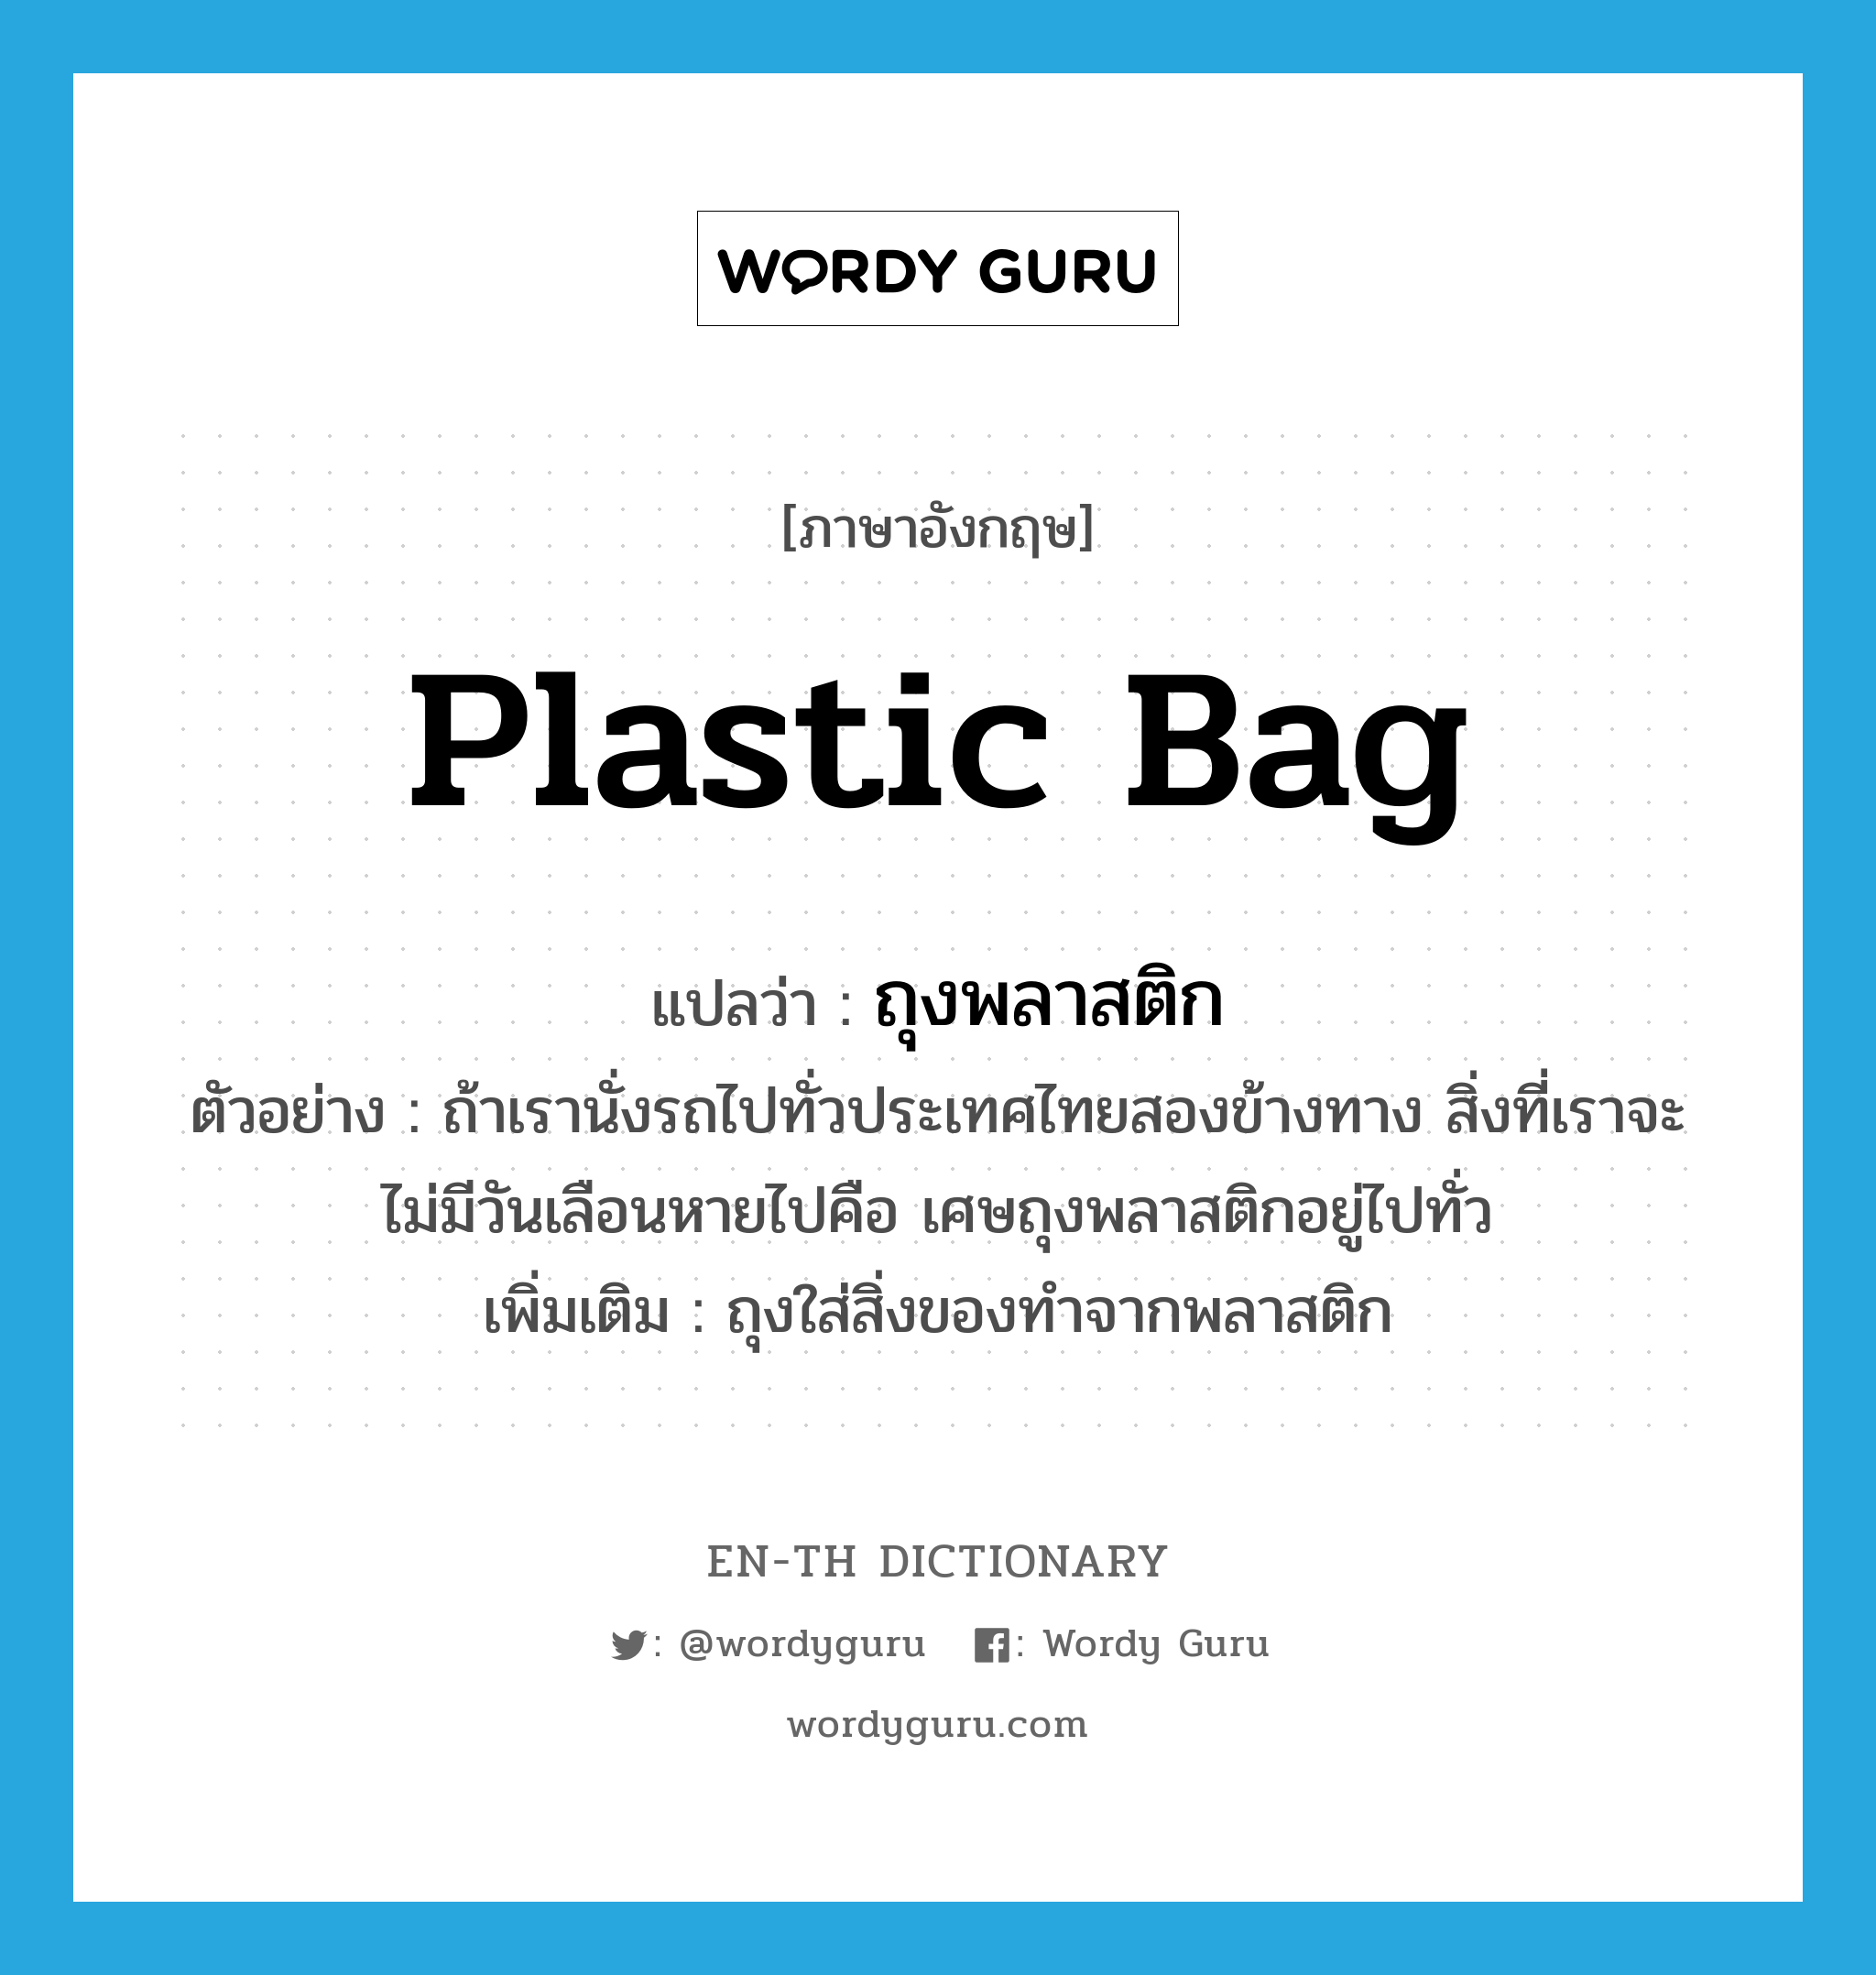 plastic bag แปลว่า?, คำศัพท์ภาษาอังกฤษ plastic bag แปลว่า ถุงพลาสติก ประเภท N ตัวอย่าง ถ้าเรานั่งรถไปทั่วประเทศไทยสองข้างทาง สิ่งที่เราจะไม่มีวันเลือนหายไปคือ เศษถุงพลาสติกอยู่ไปทั่ว เพิ่มเติม ถุงใส่สิ่งของทำจากพลาสติก หมวด N